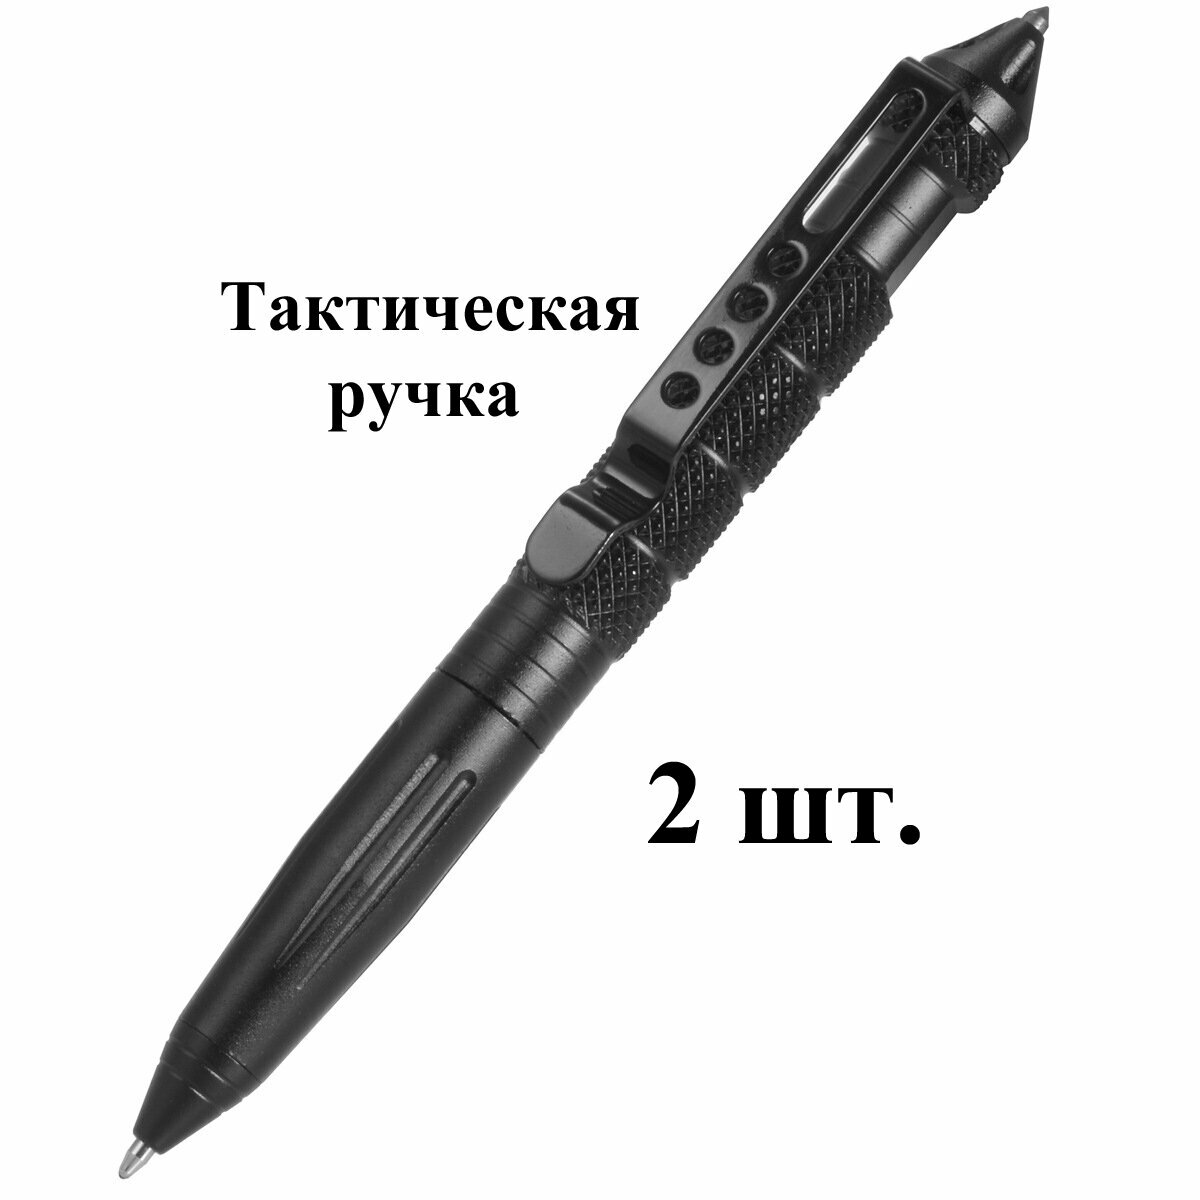 2 шт. Шариковая тактическая ручка в подарок тактический товар для письма туризма спорта.